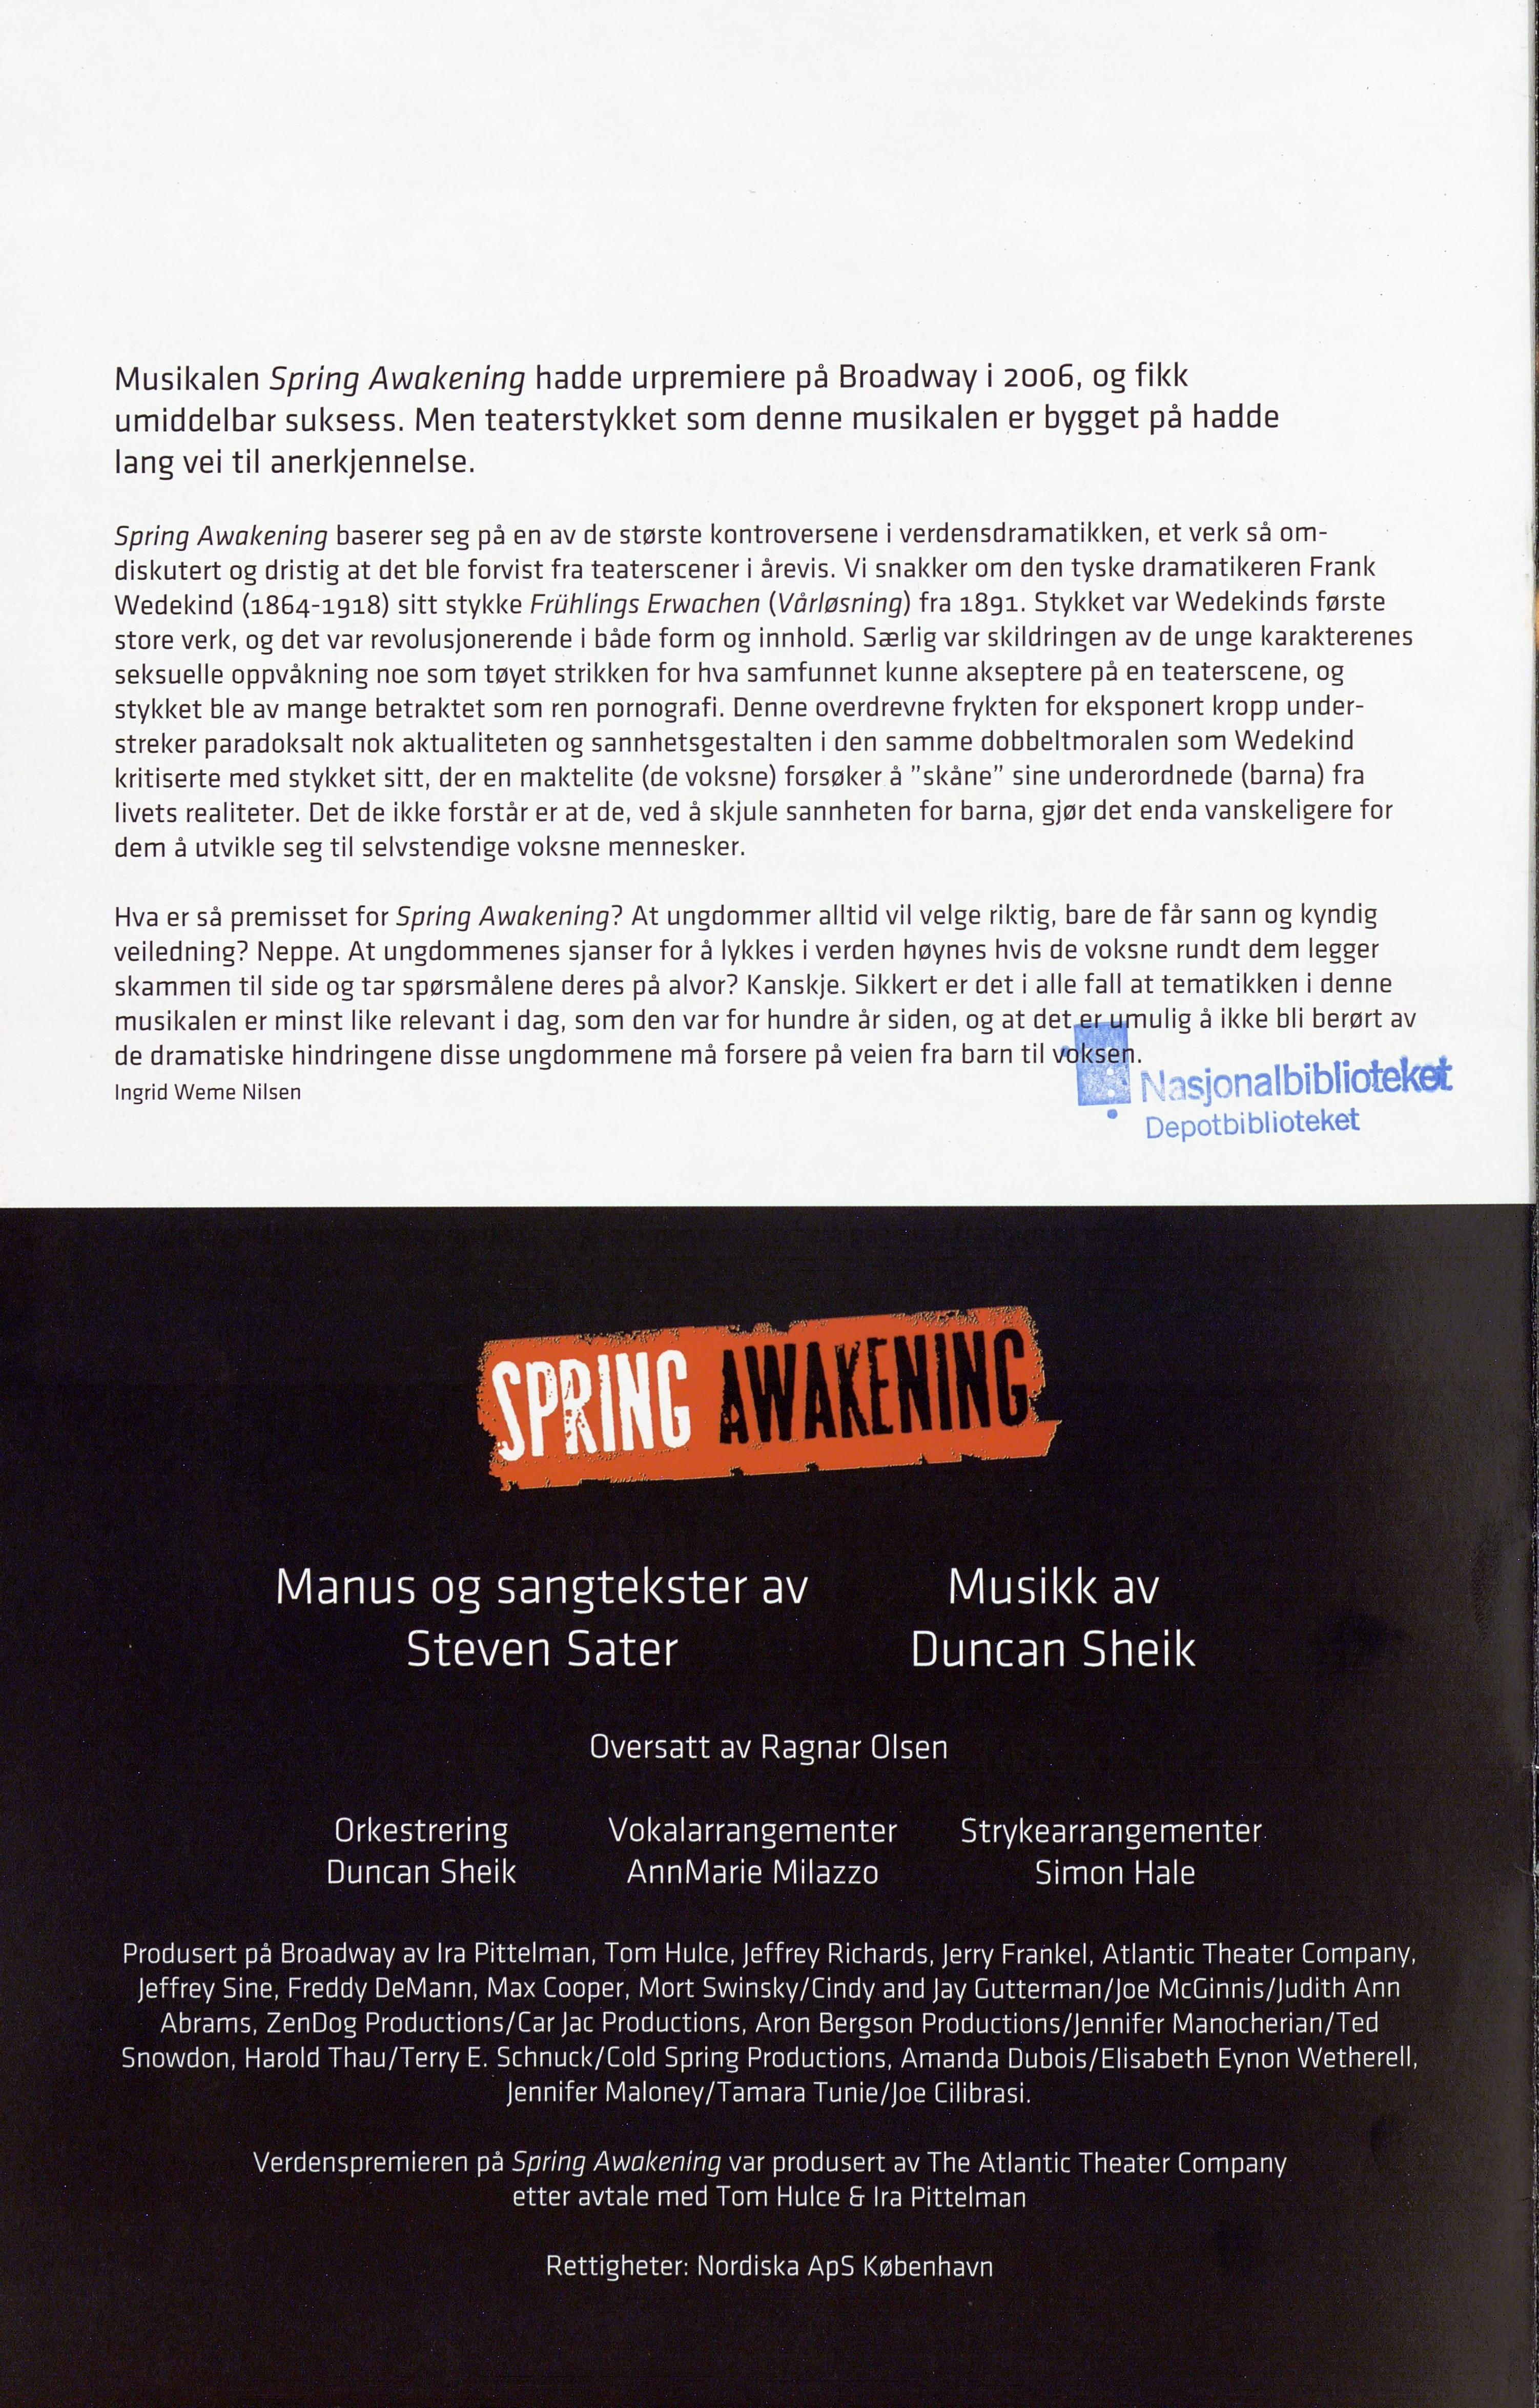 Musikalen Spring Aakening hadde urpremiere på Broaday i 2006, og fikk umiddelbar suksess. Men teaterstykket som denne musikalen er bygget på hadde lang vei til anerkjennelse.